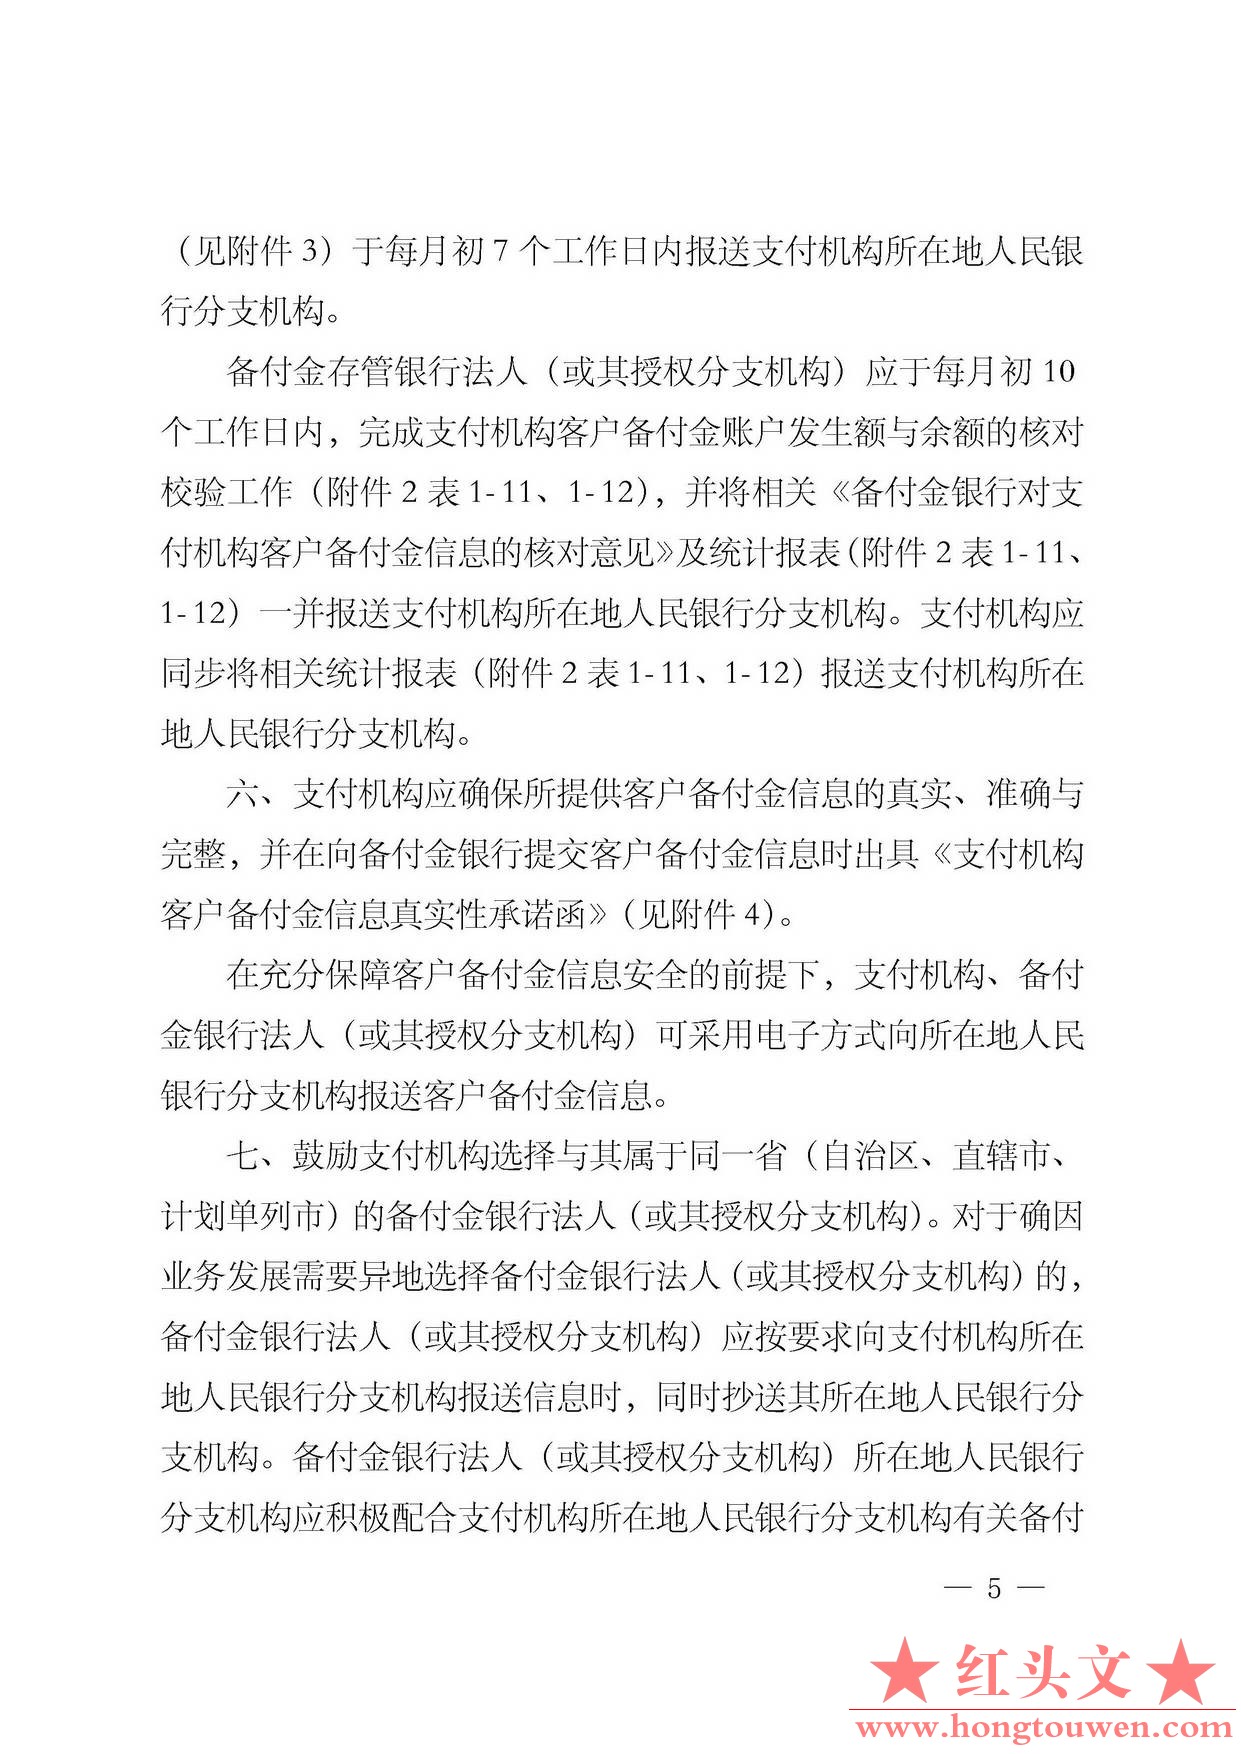 银发[2013]256号-中国人民银行关于建立支付机构客户备付金信息核对校验机制的通知_页.jpg